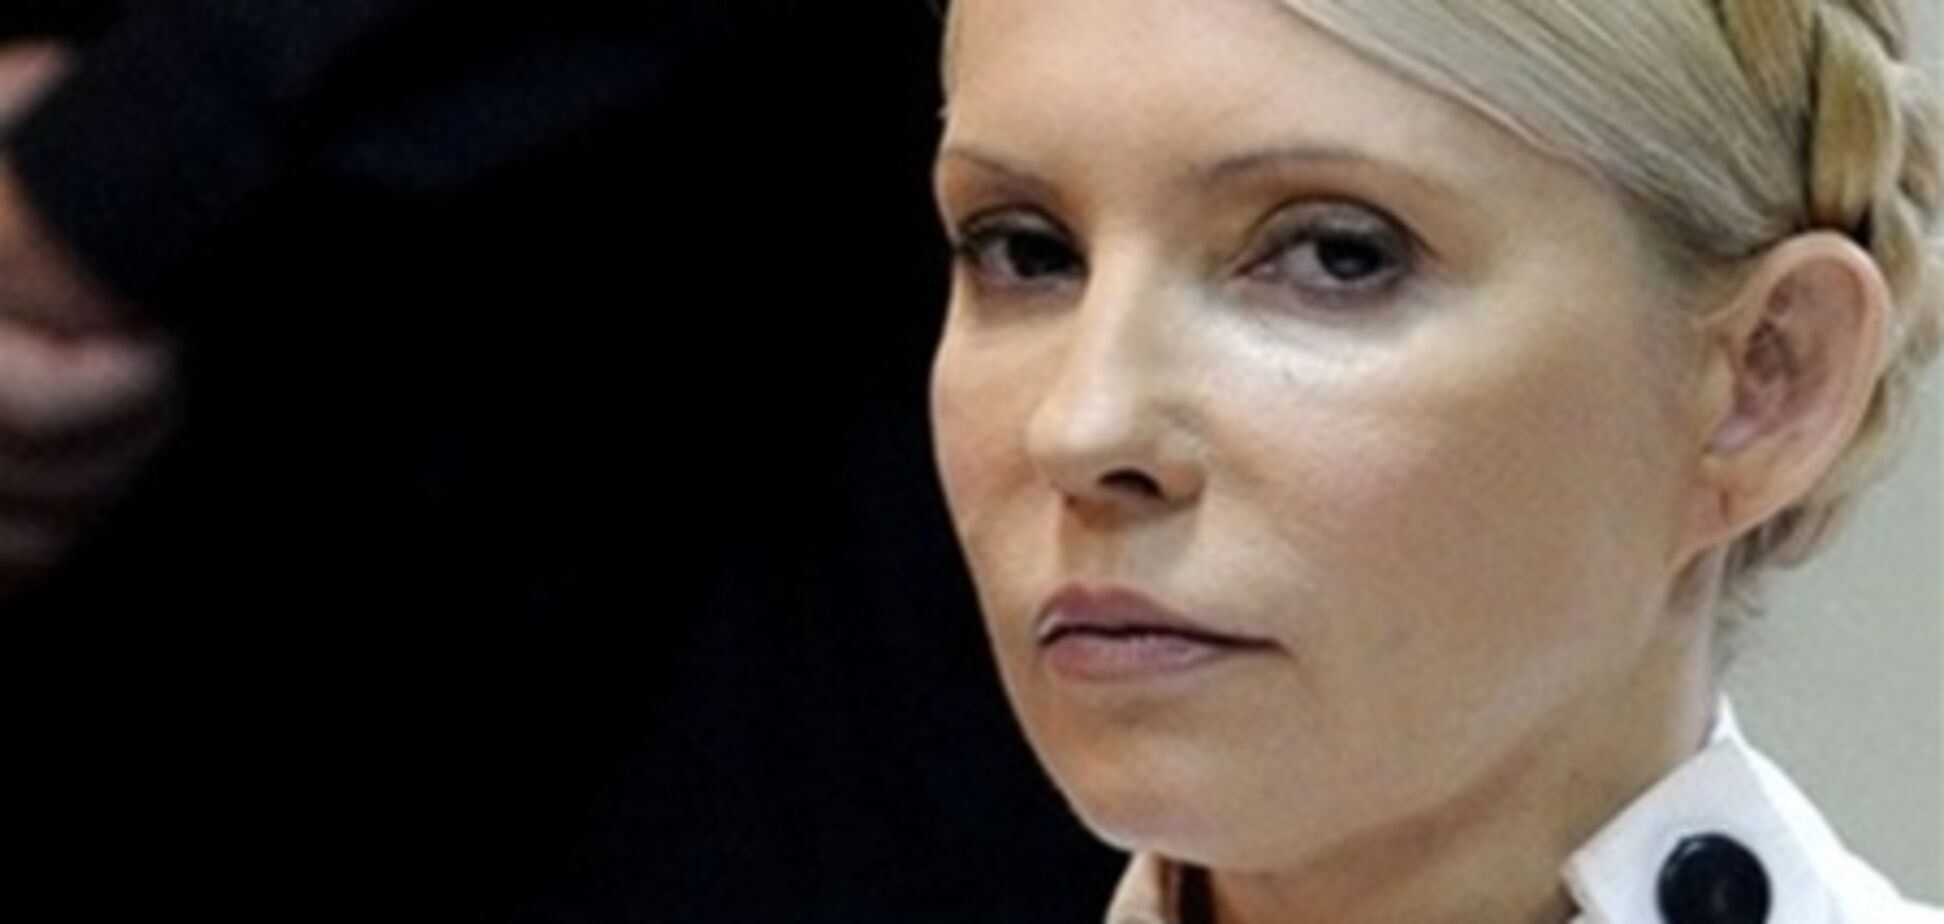 Тимошенко действительно объявила голодовку - источник ГПтСУ